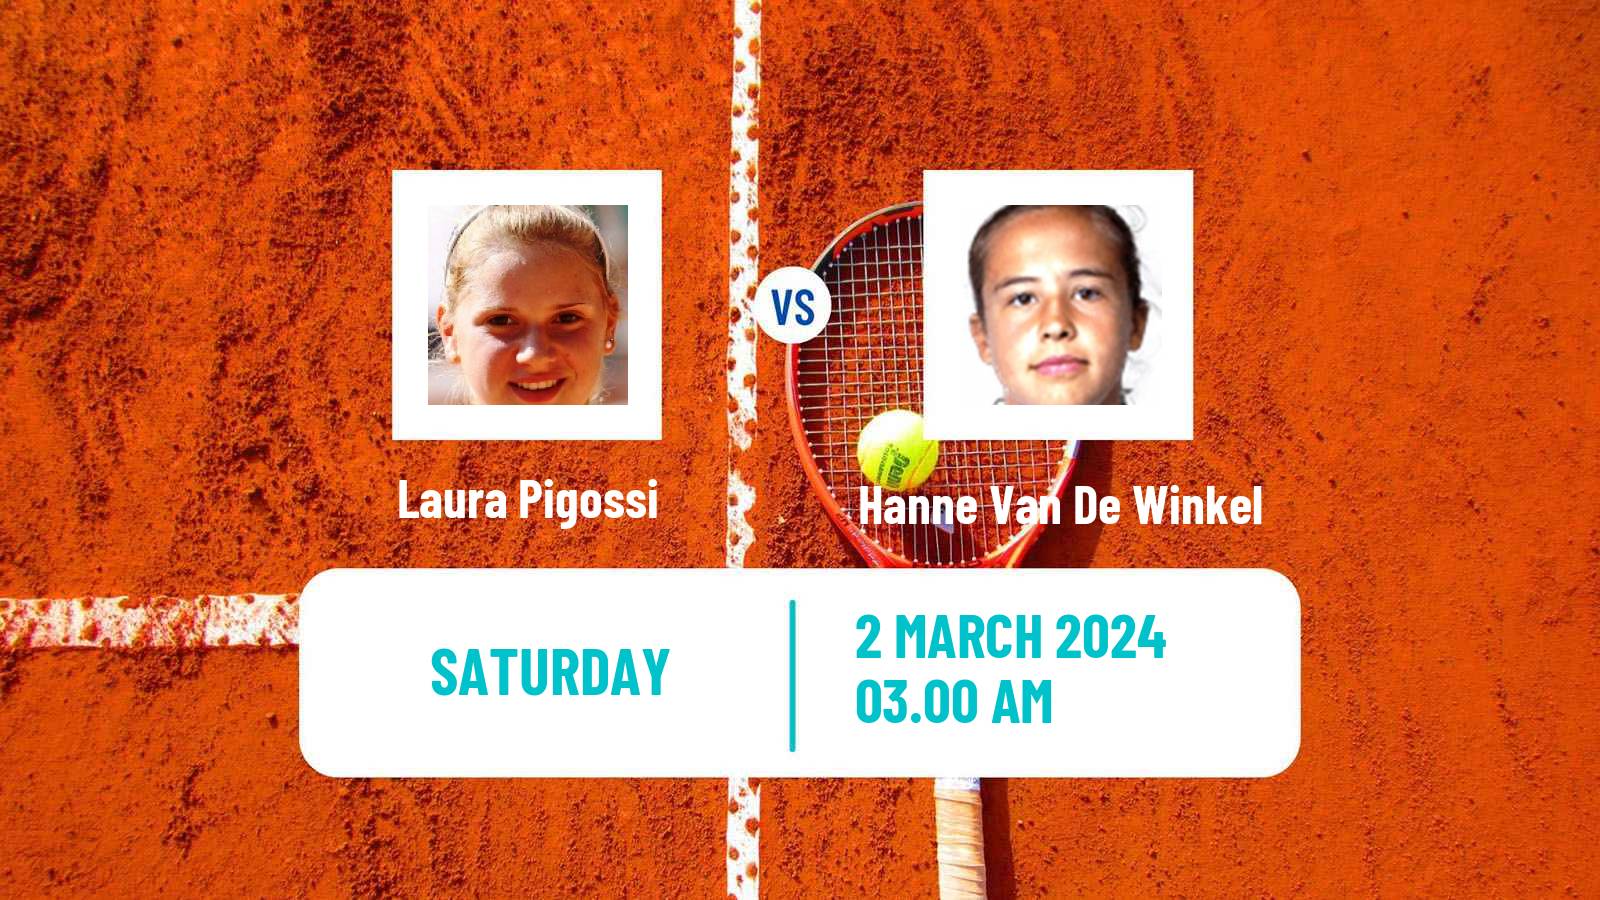 Tennis ITF W50 Pretoria 2 Women Laura Pigossi - Hanne Van De Winkel